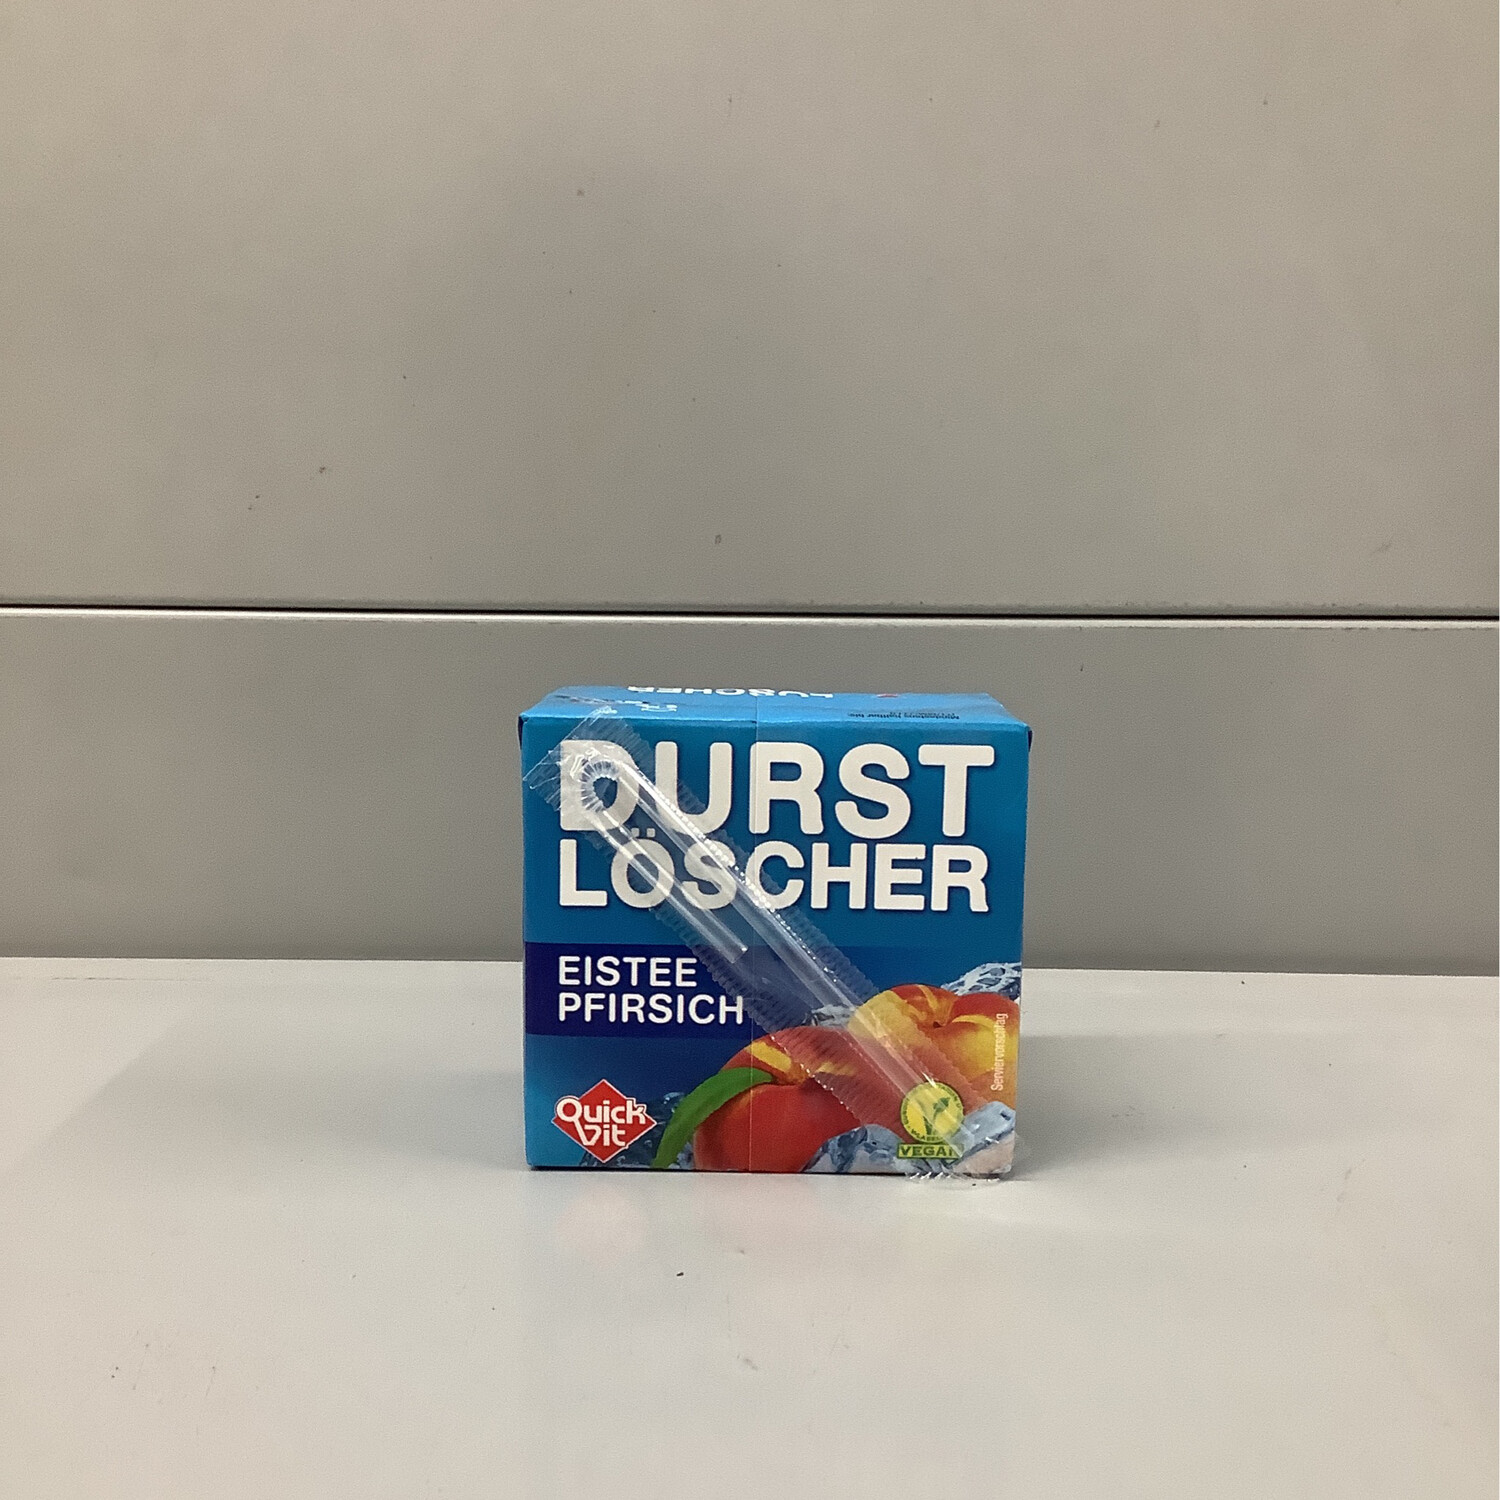 Durst Locher Eistee Pfirsich 0.51L